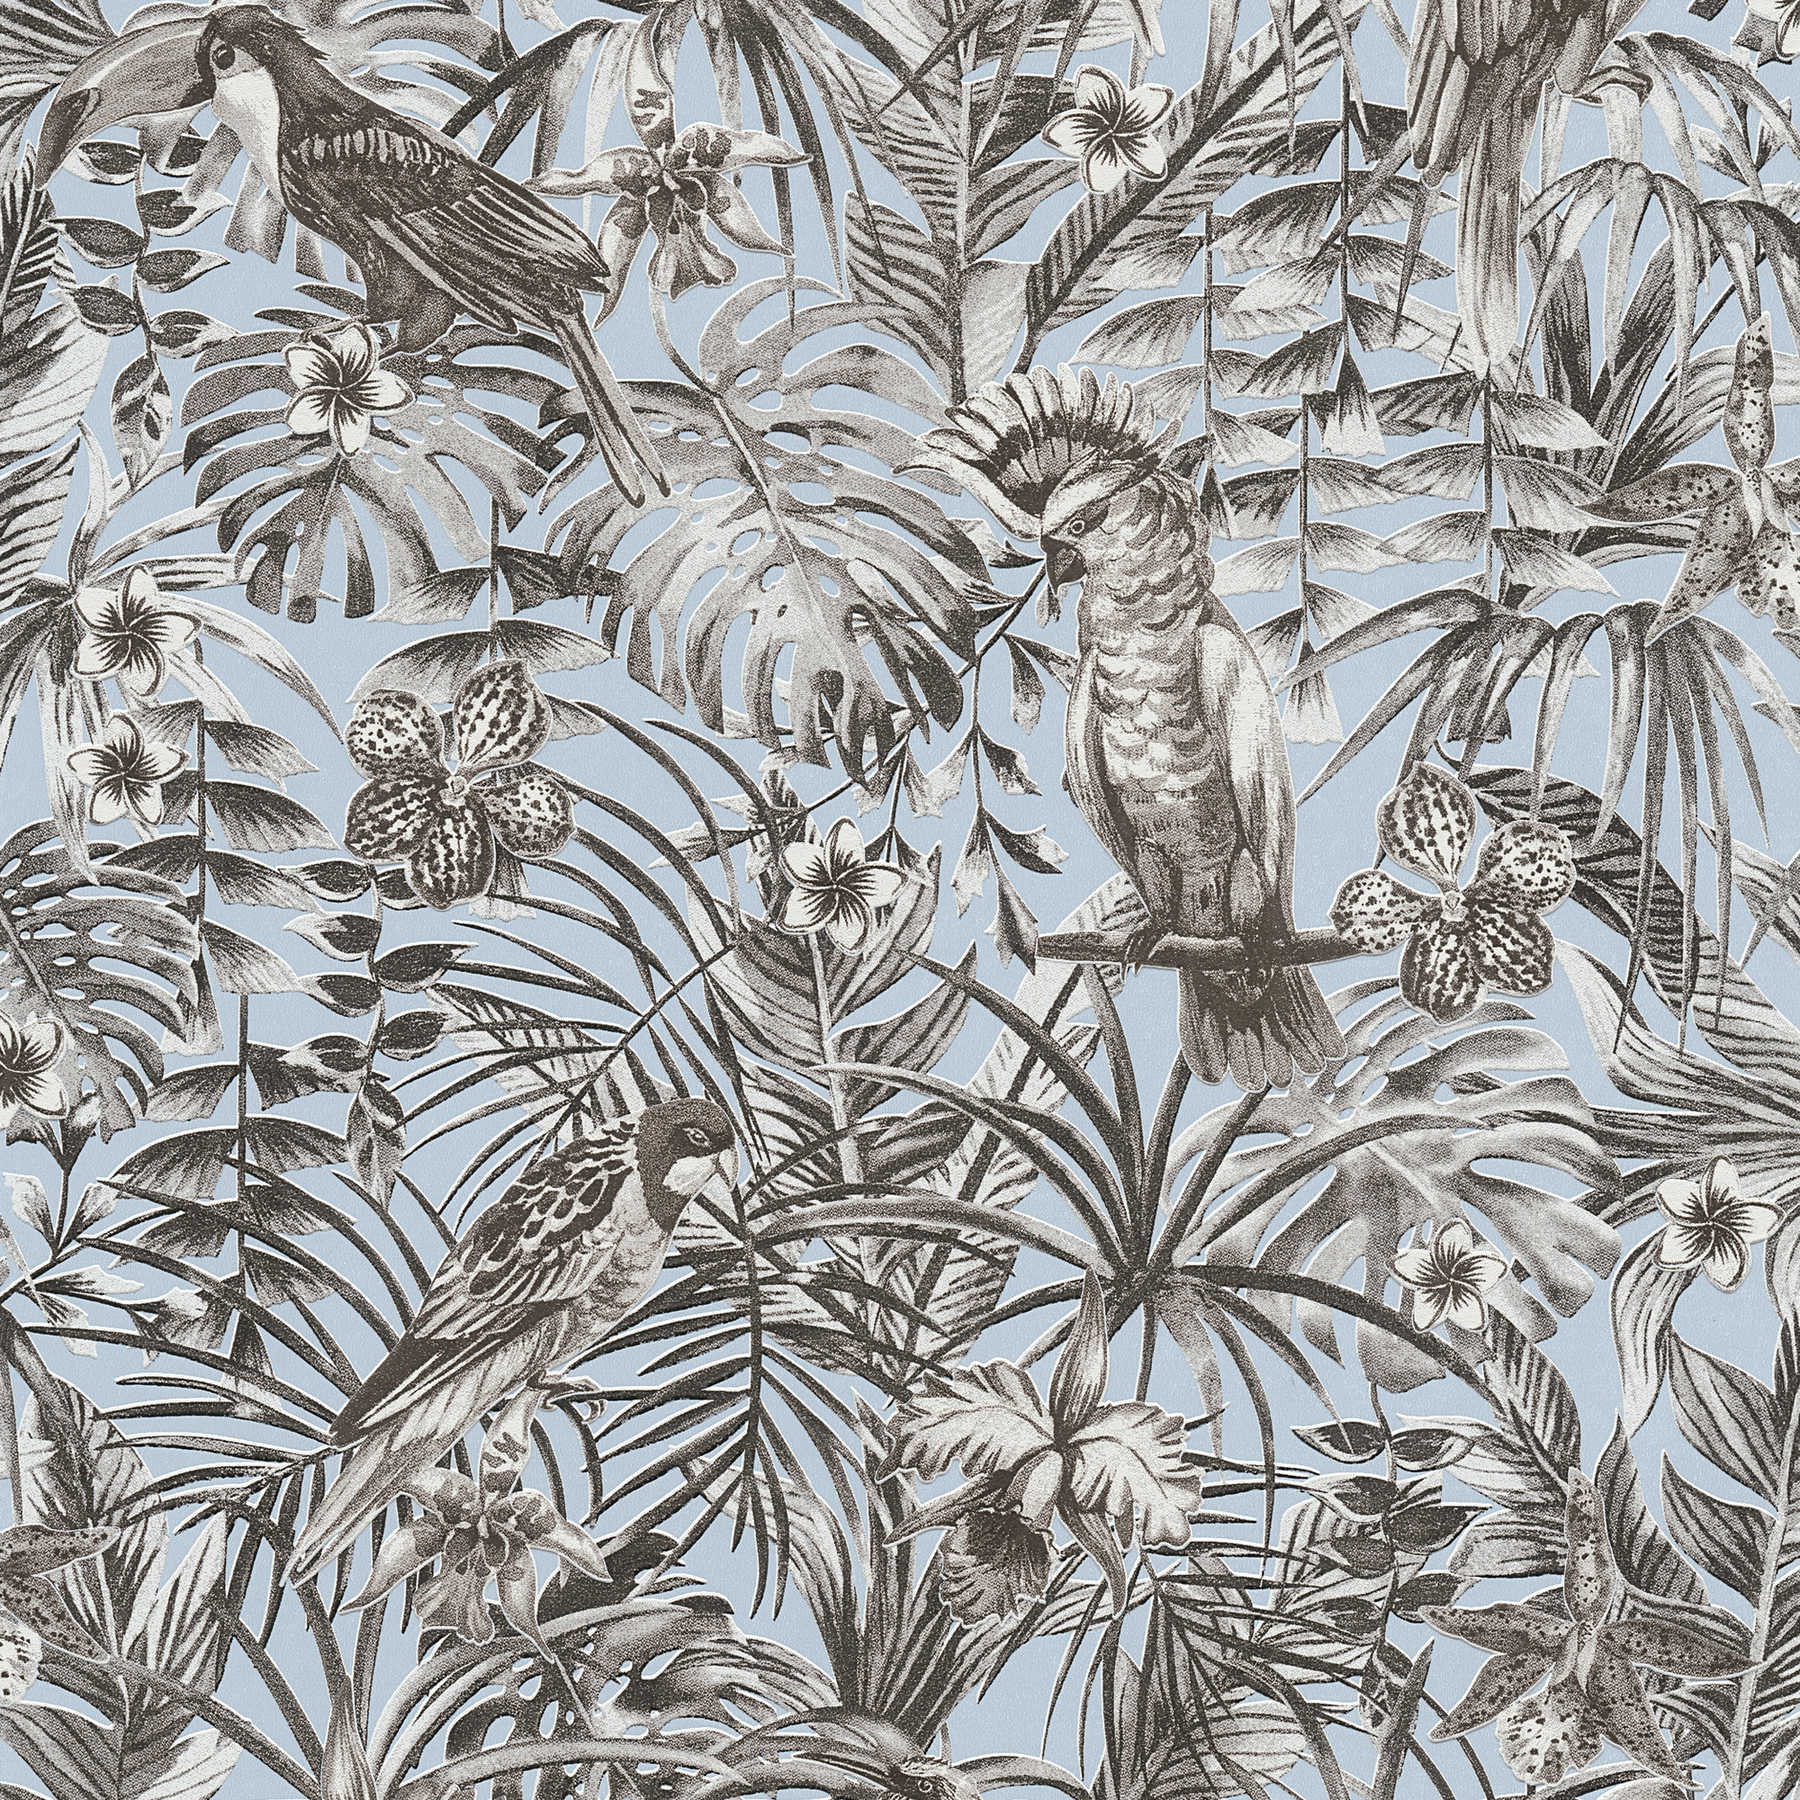 Papier peint exotique oiseaux tropicaux, fleurs et feuilles - gris, bleu, blanc
